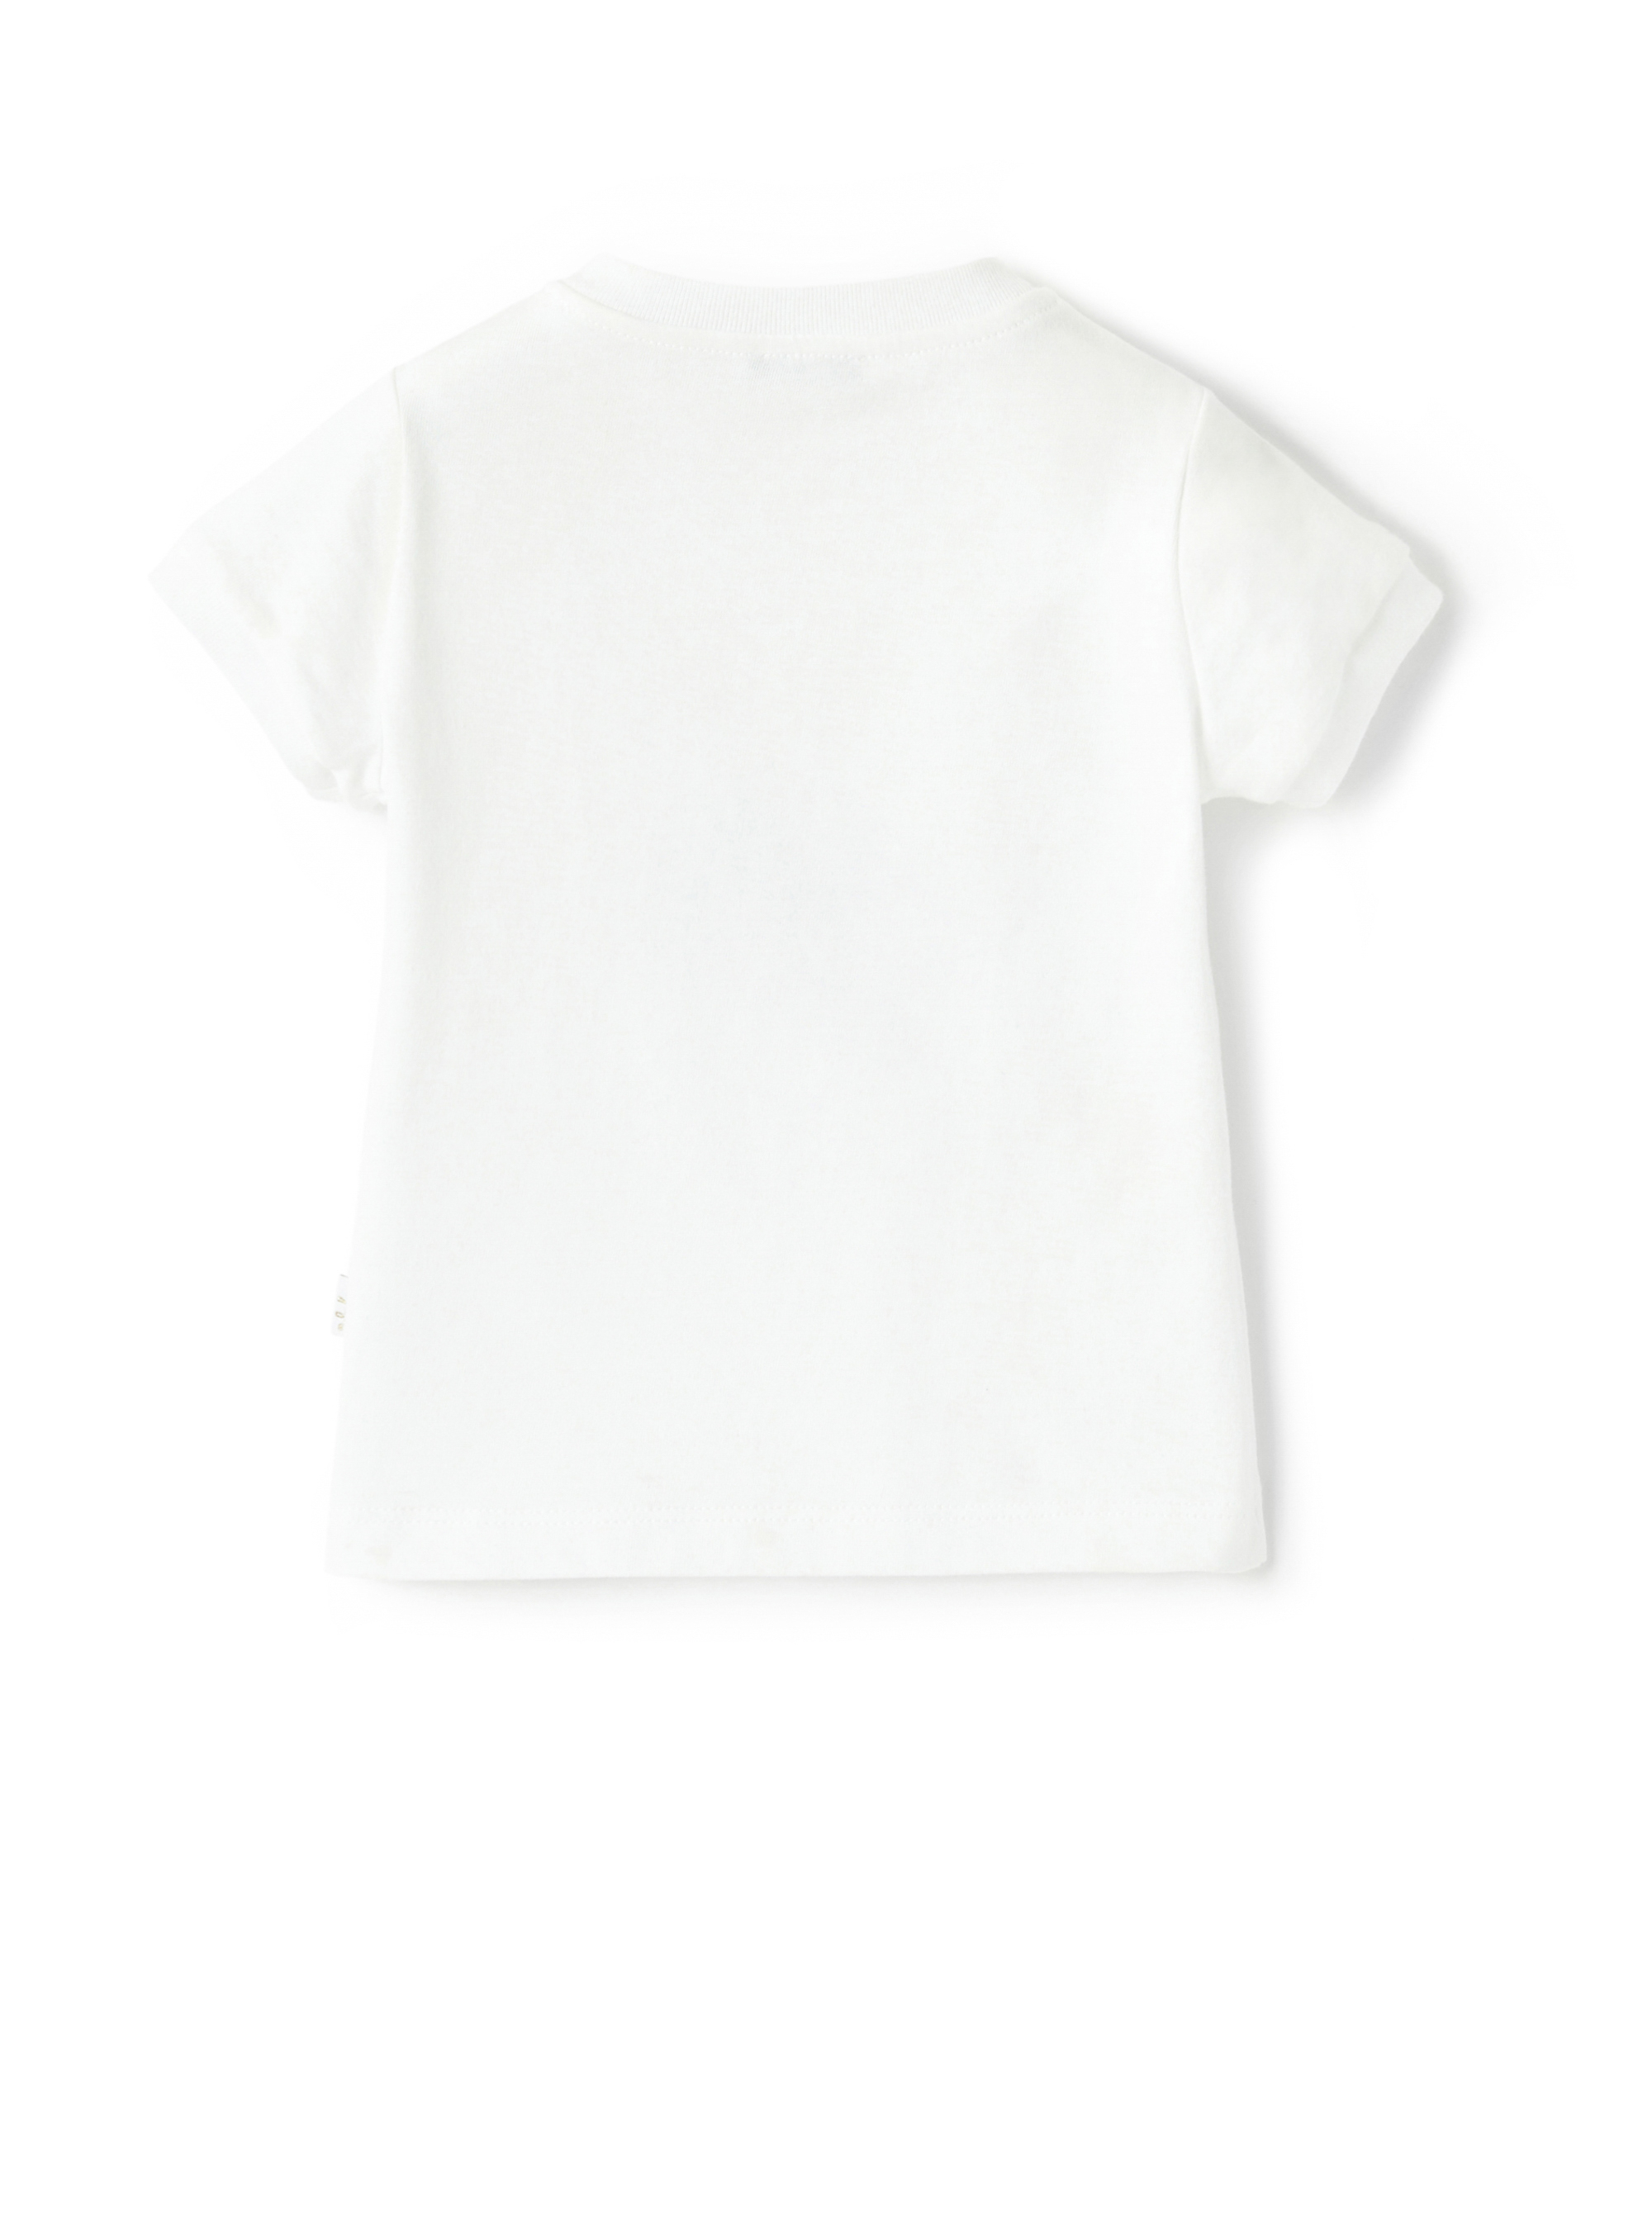 T-shirt con cagnolino e applicazione - Bianco | Il Gufo